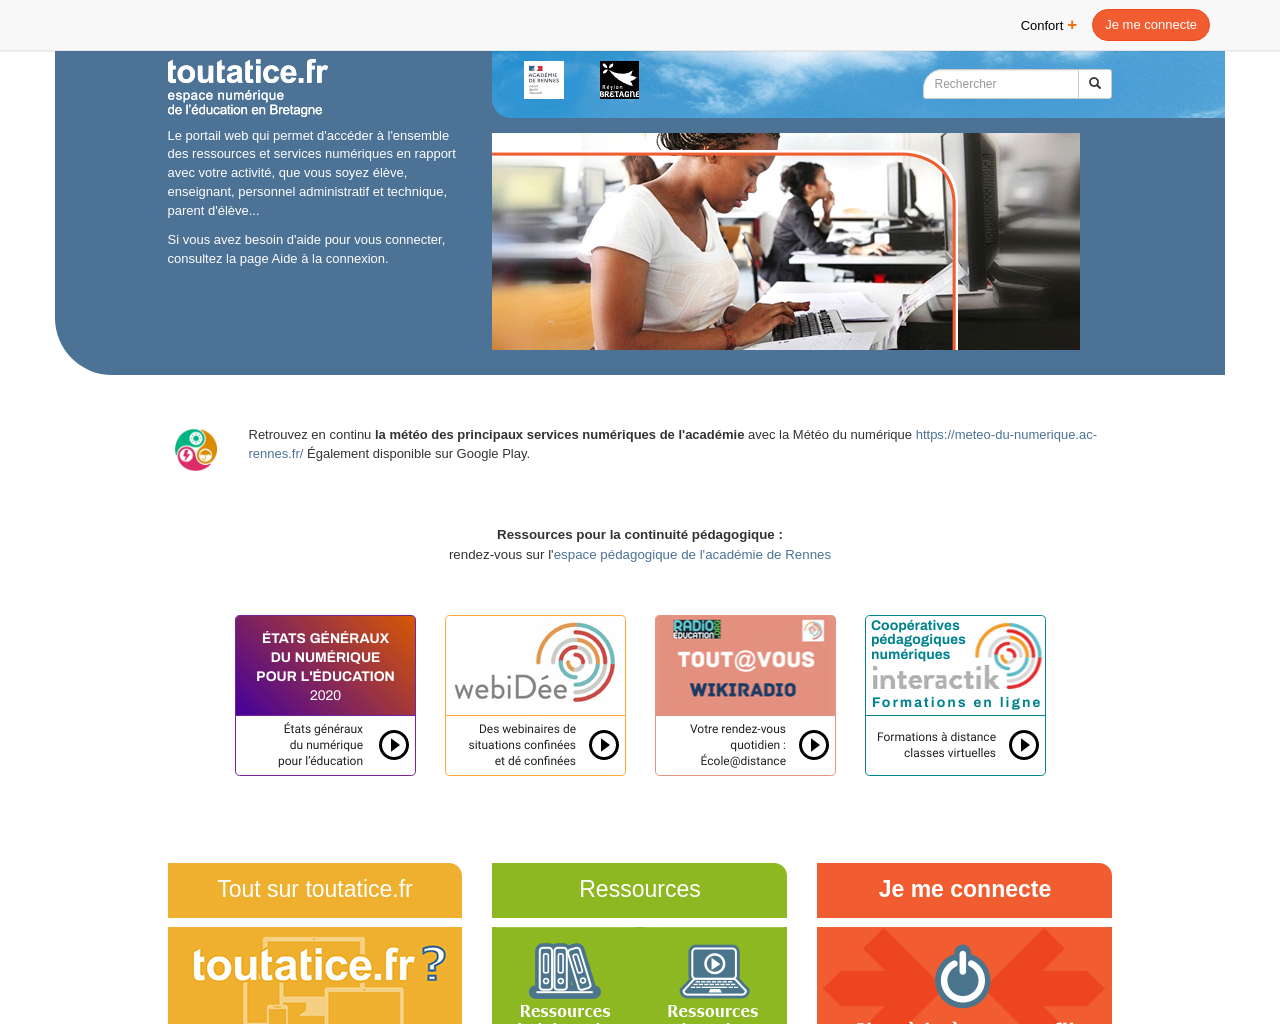 www.toutatice.fr